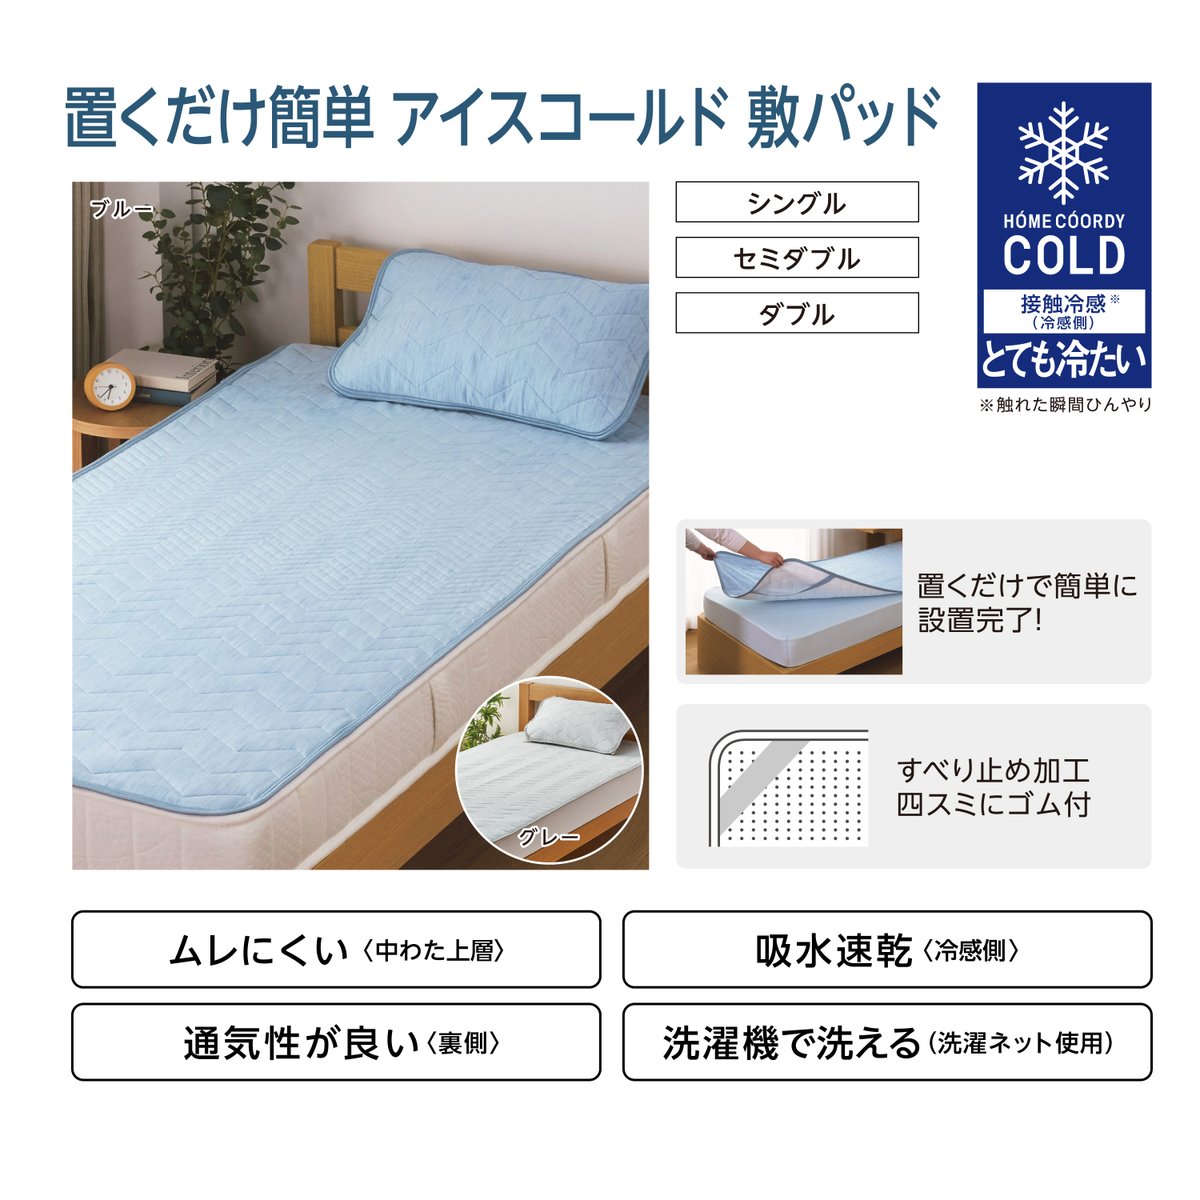 ／
選べる３つの冷たさ❄
「#ホームコーディコールド の敷パッド」
＼

そろそろ夏物寝具を検討する頃でしょうか？👀

接触冷感素材のひんやり寝具を使って、この夏を快適に過ごしましょう！

#ホームコーディ コールドの敷パッドは3種類の冷たさから選べます✨